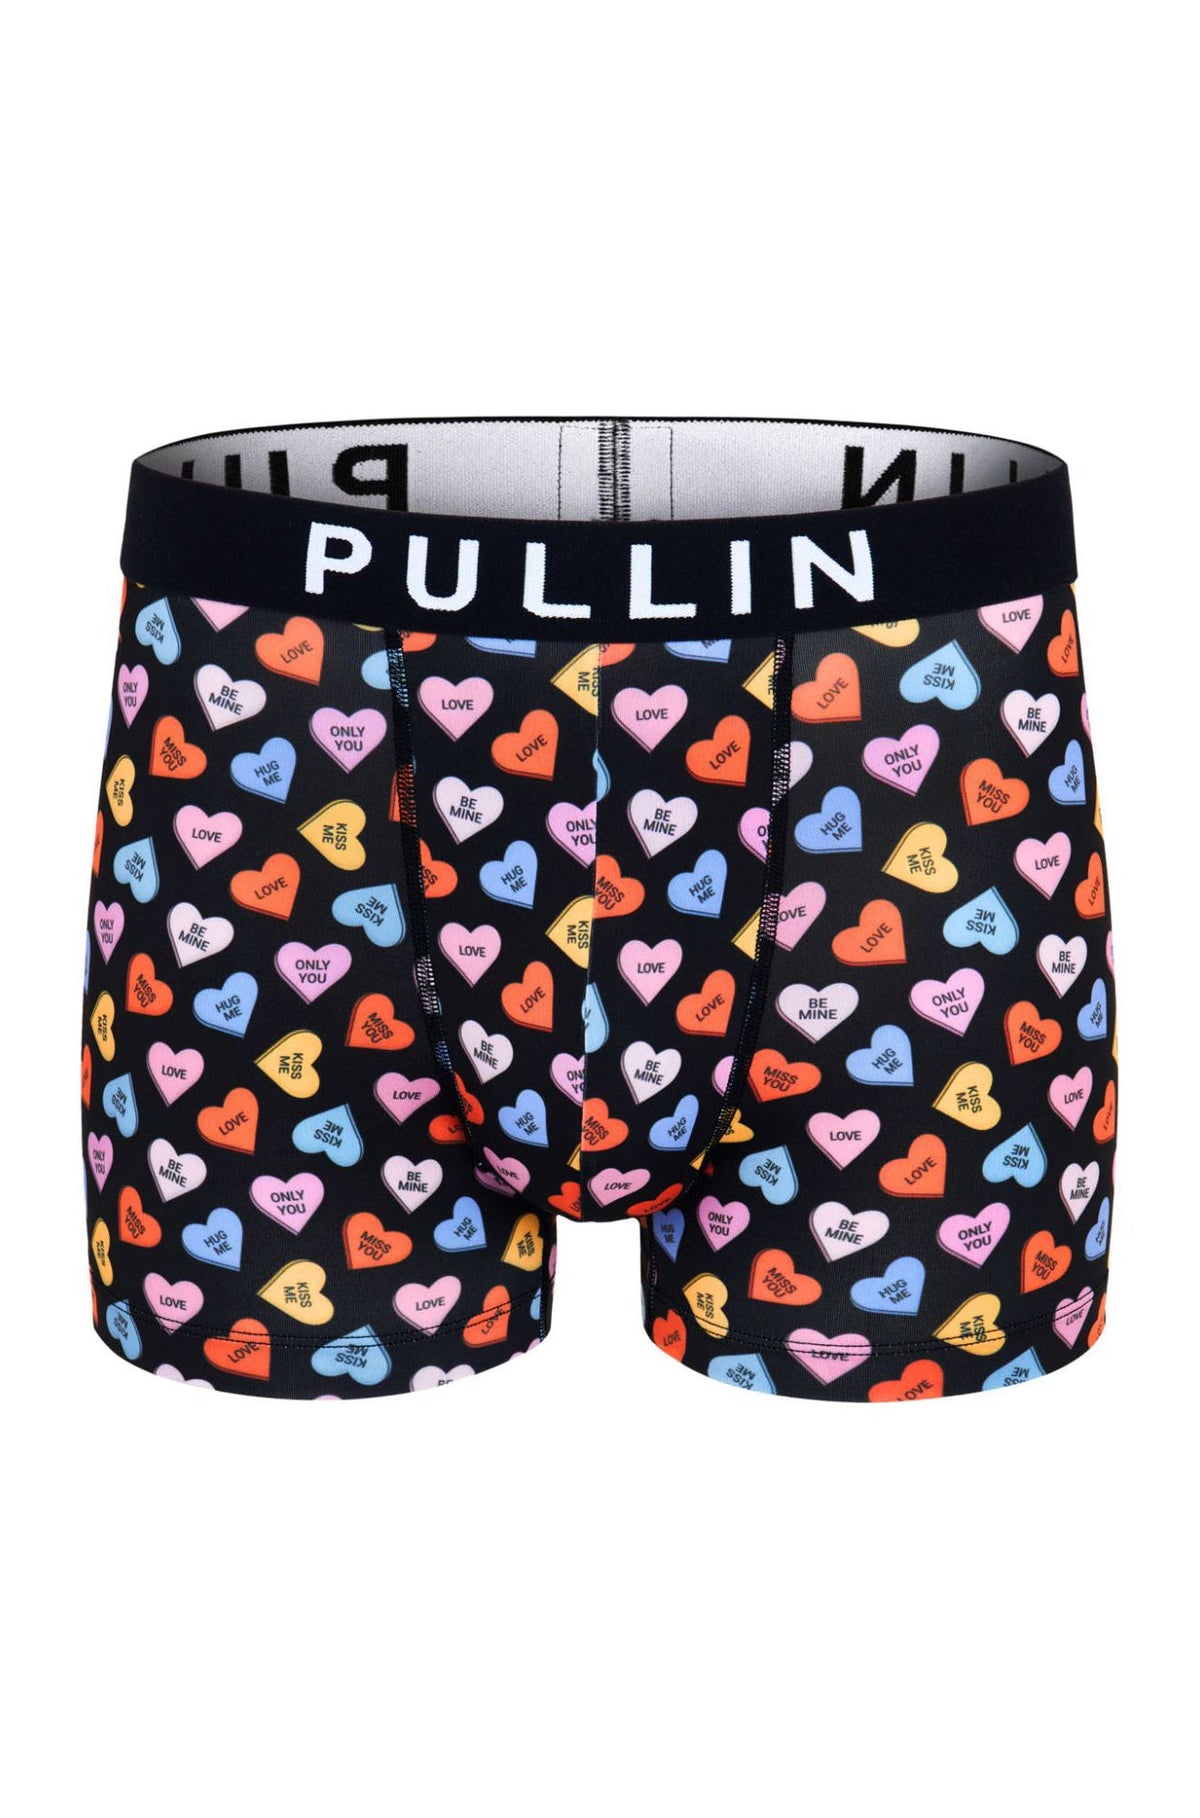 Boxer pour homme par Pullin | MAS LOVEYOU24 | Machemise.ca, vêtements mode pour hommes